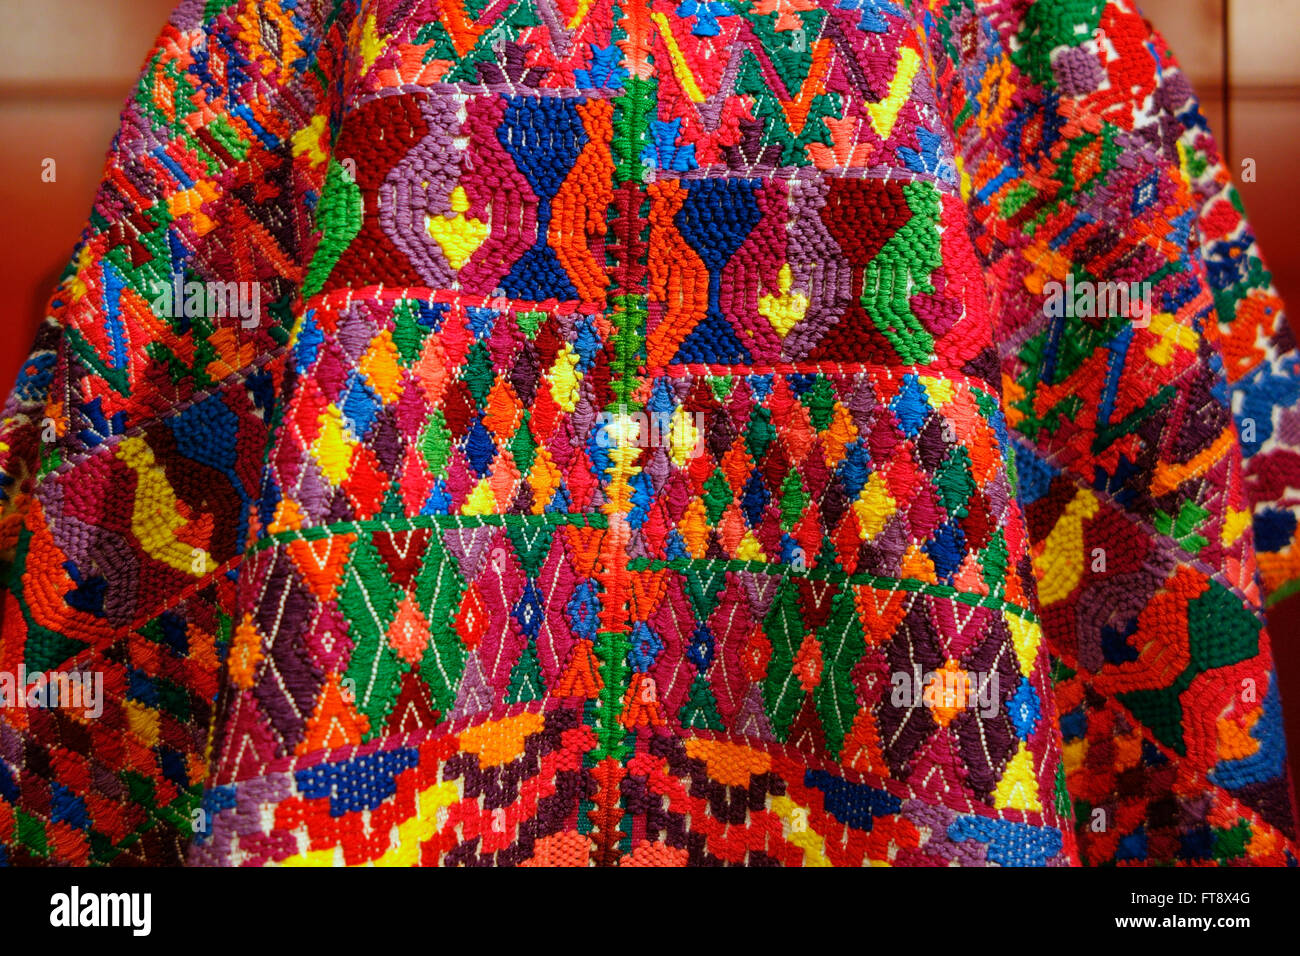 Mayan textile, Centro de Textiles del Mundo Maya, San Cristobal de las Casas, Chiapas, Mexico Stock Photo